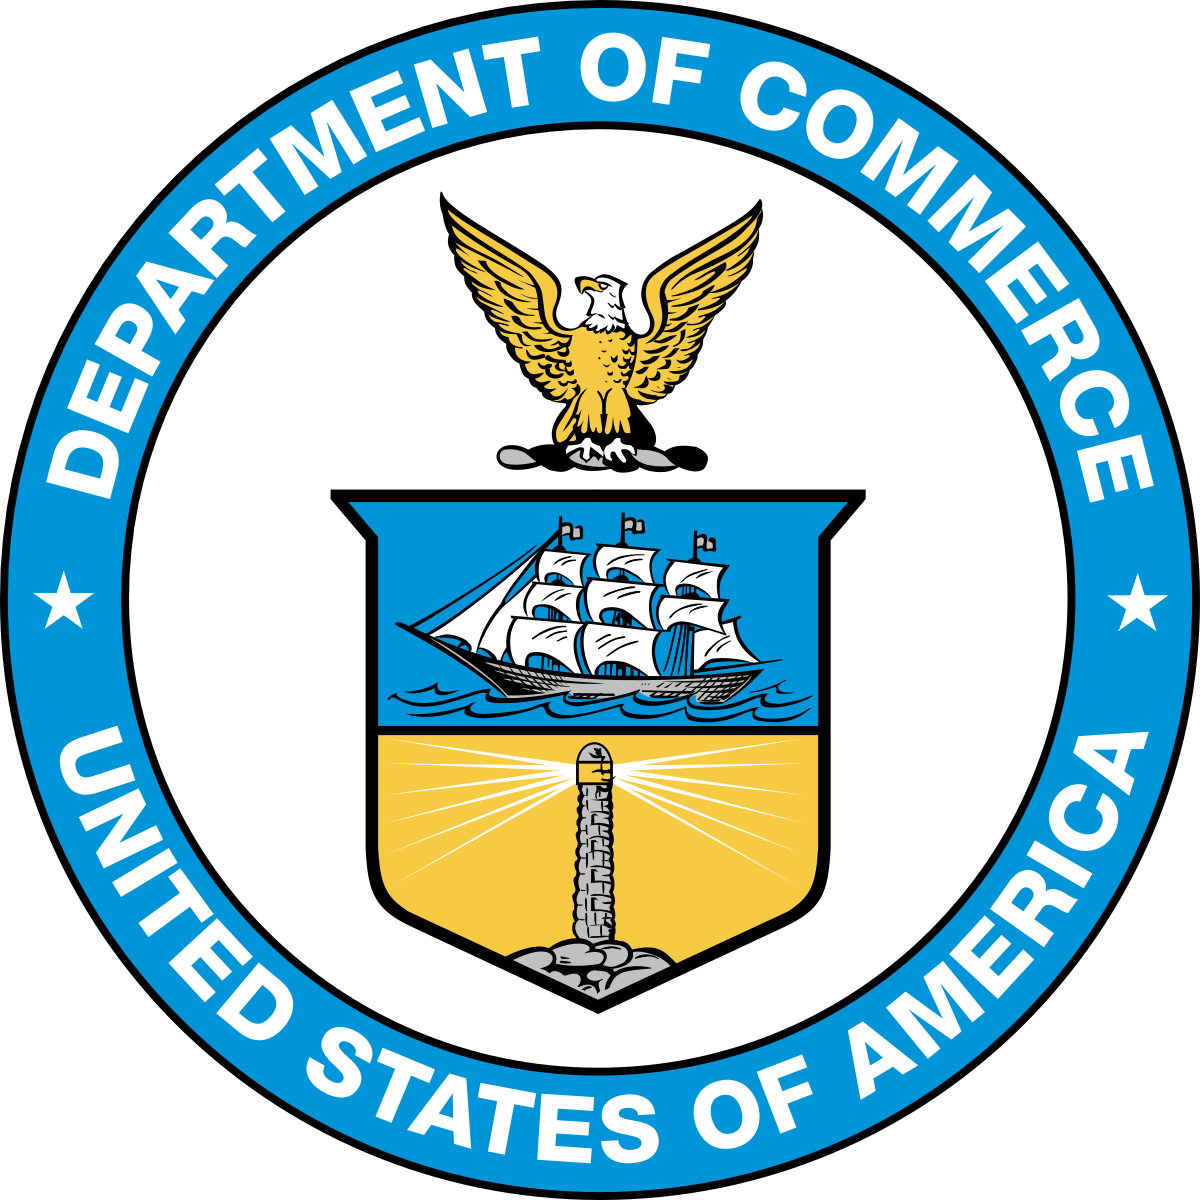 Commerce Logo